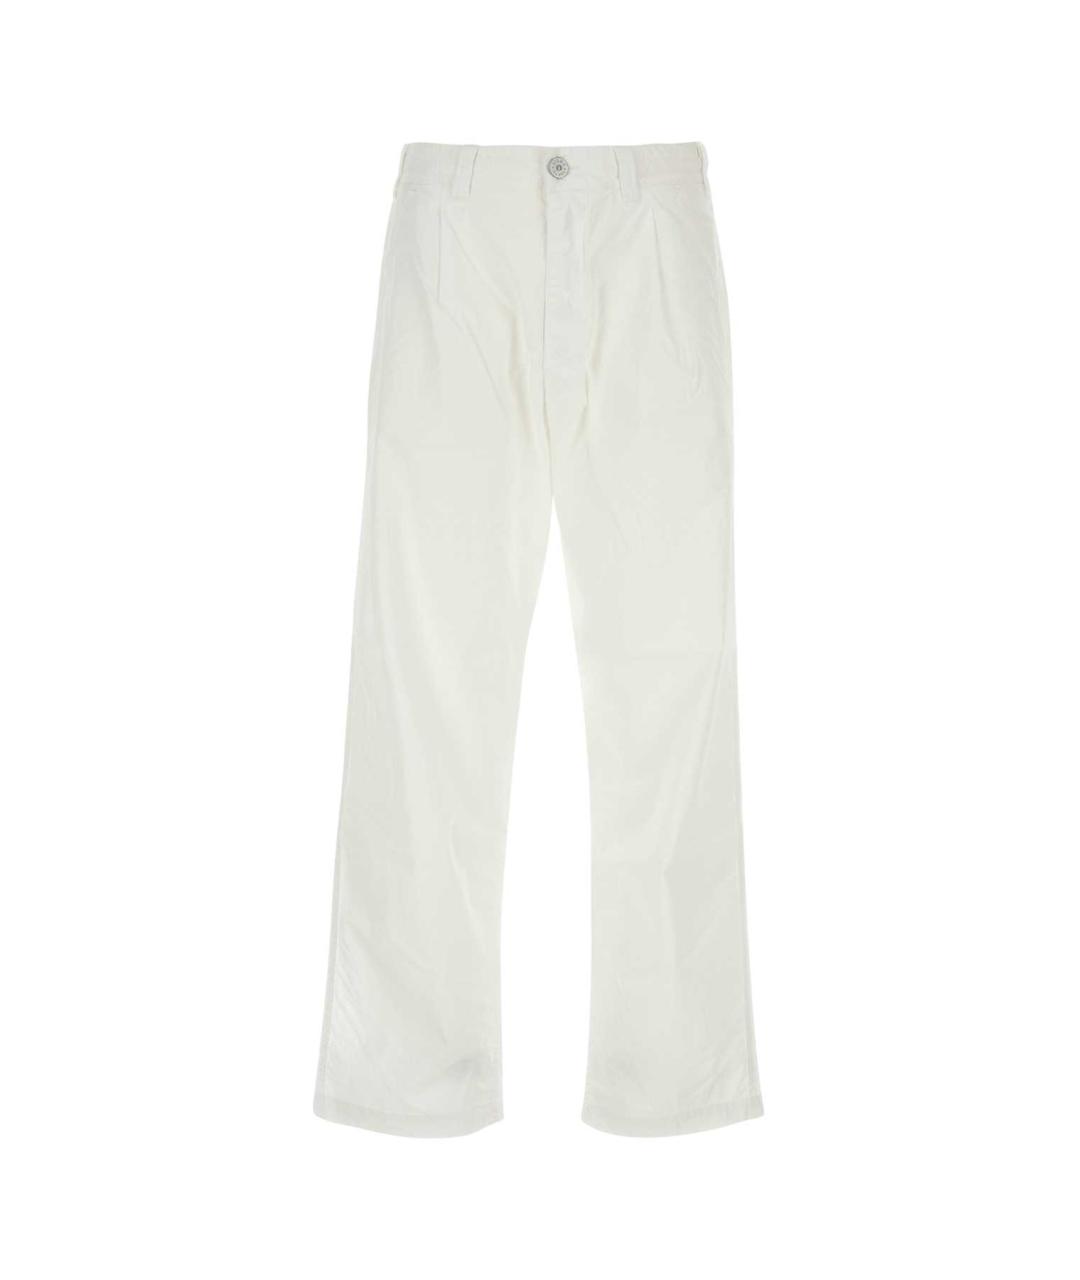 STONE ISLAND Белые хлопковые повседневные брюки, фото 1